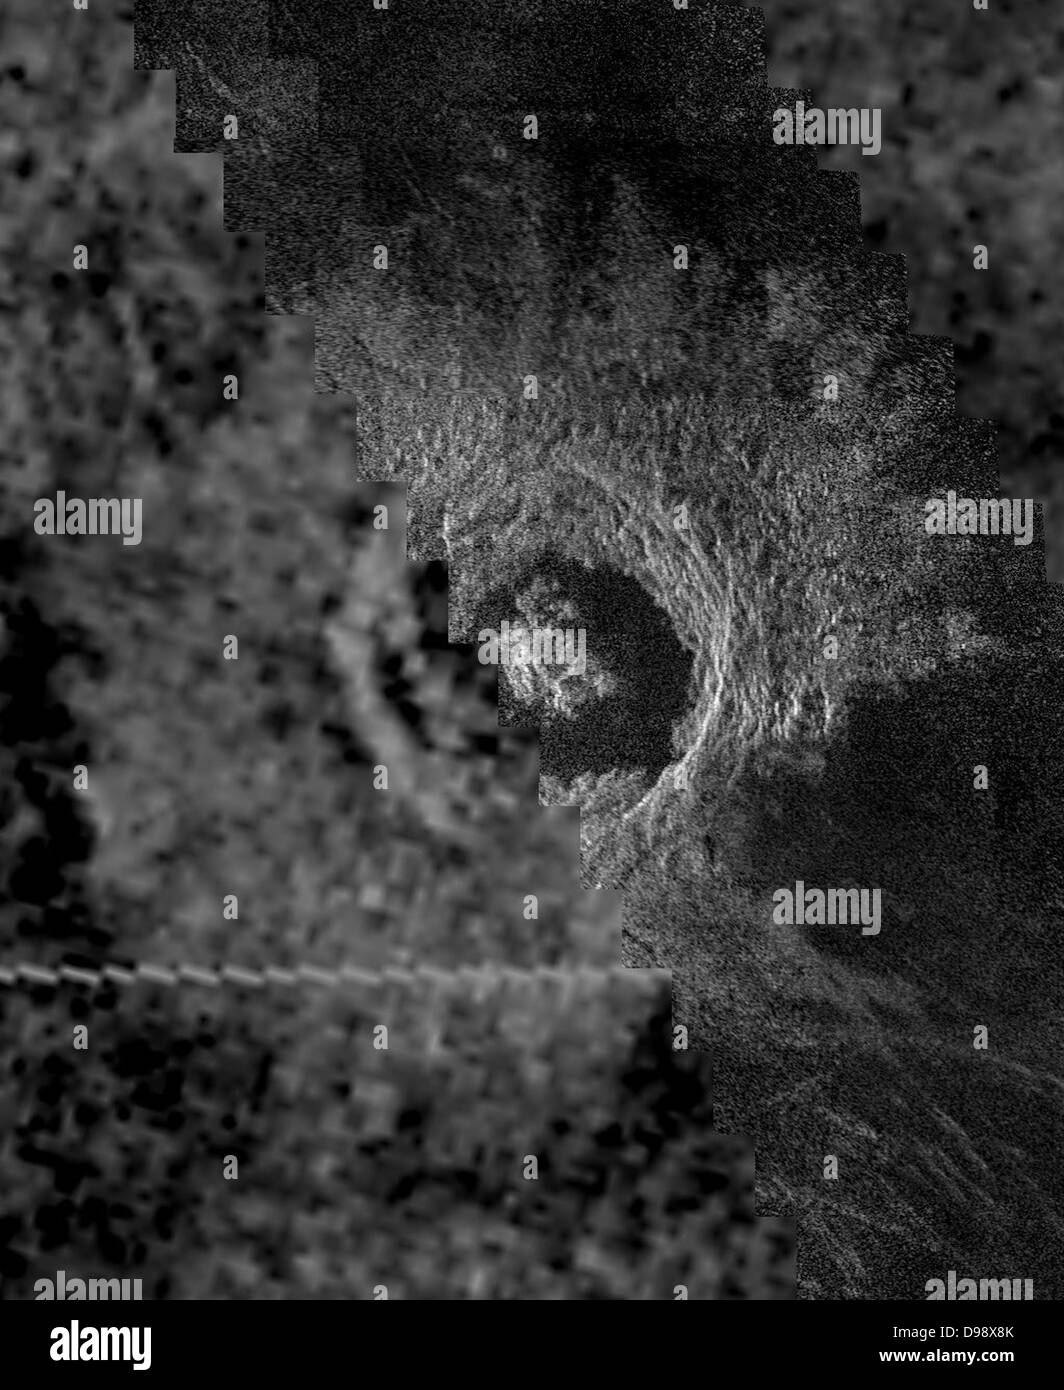 Pianeta Venere. il cratere Venusian Golubkina, 340 km (20,4 miglia) diametro cratere da impatto, contiene dati di Magellano mosaicked con un sovietico Venera 15/16 immagine radar della stessa funzione. Il Magellan parte dell'immagine (a destra) rivela i dettagli della geologia del cratere come il picco centrale interno pareti terrazzate e la superficie estremamente liscia pavimento del cratere. La levigatezza del pavimento può essere dovuta a martellamento del vulcanico flussi di lava nel cratere del piano. La ruvida, blocky morfologia del cratere detriti e la Sharp terrazzati parete del cratere suggeriscono che questa funzione è relativamente giovane. Foto Stock